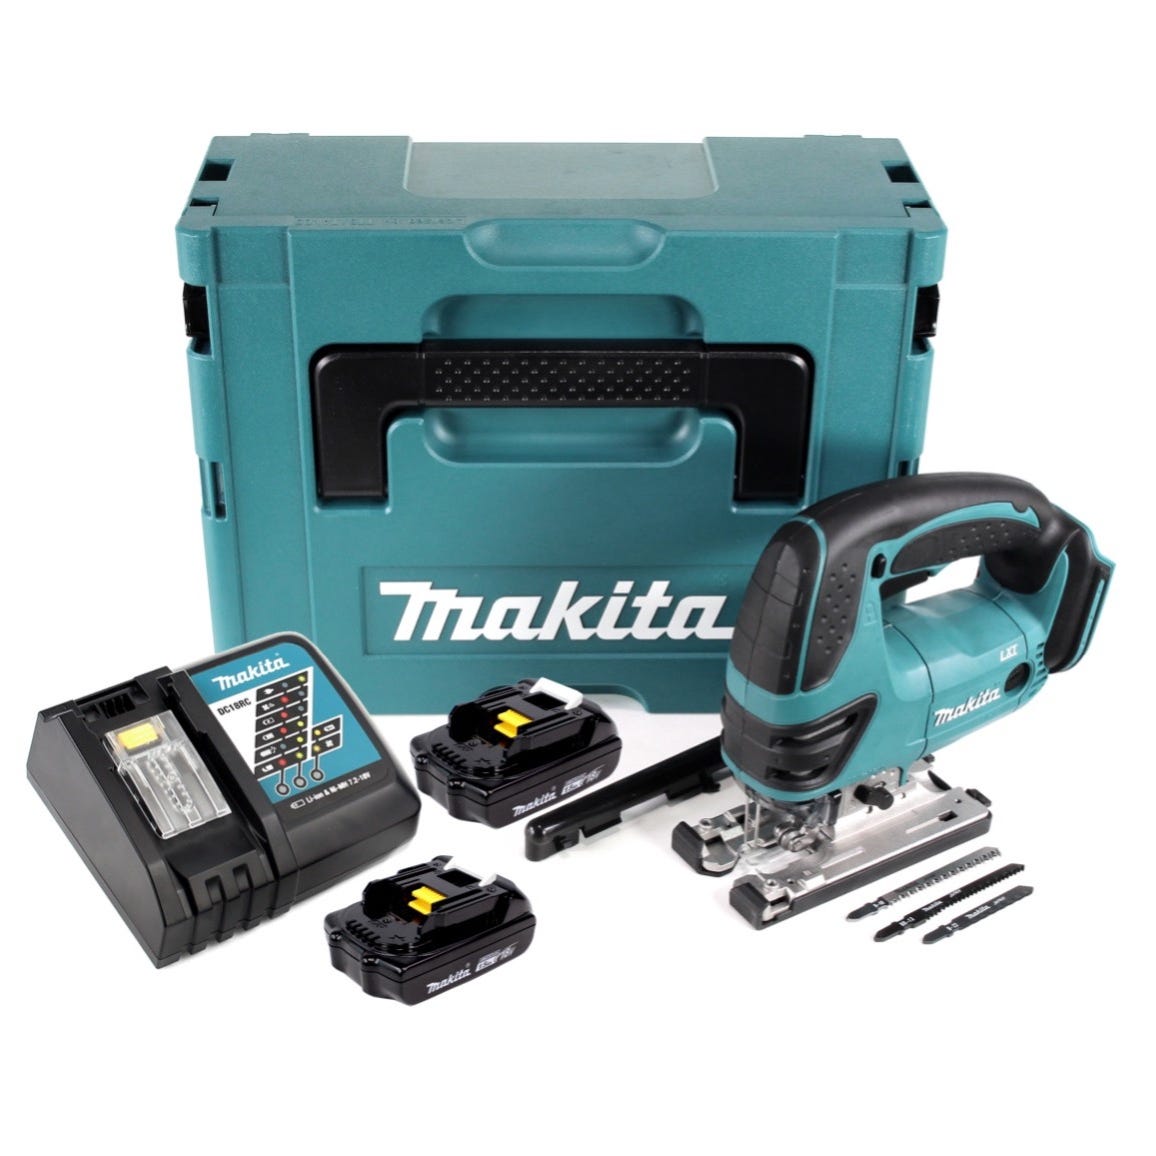 Makita DJV 180 RYJ Scie sauteuse sans fil 18V + 2x Batteries 1,5Ah + Chargeur + Coffret Makpac 2